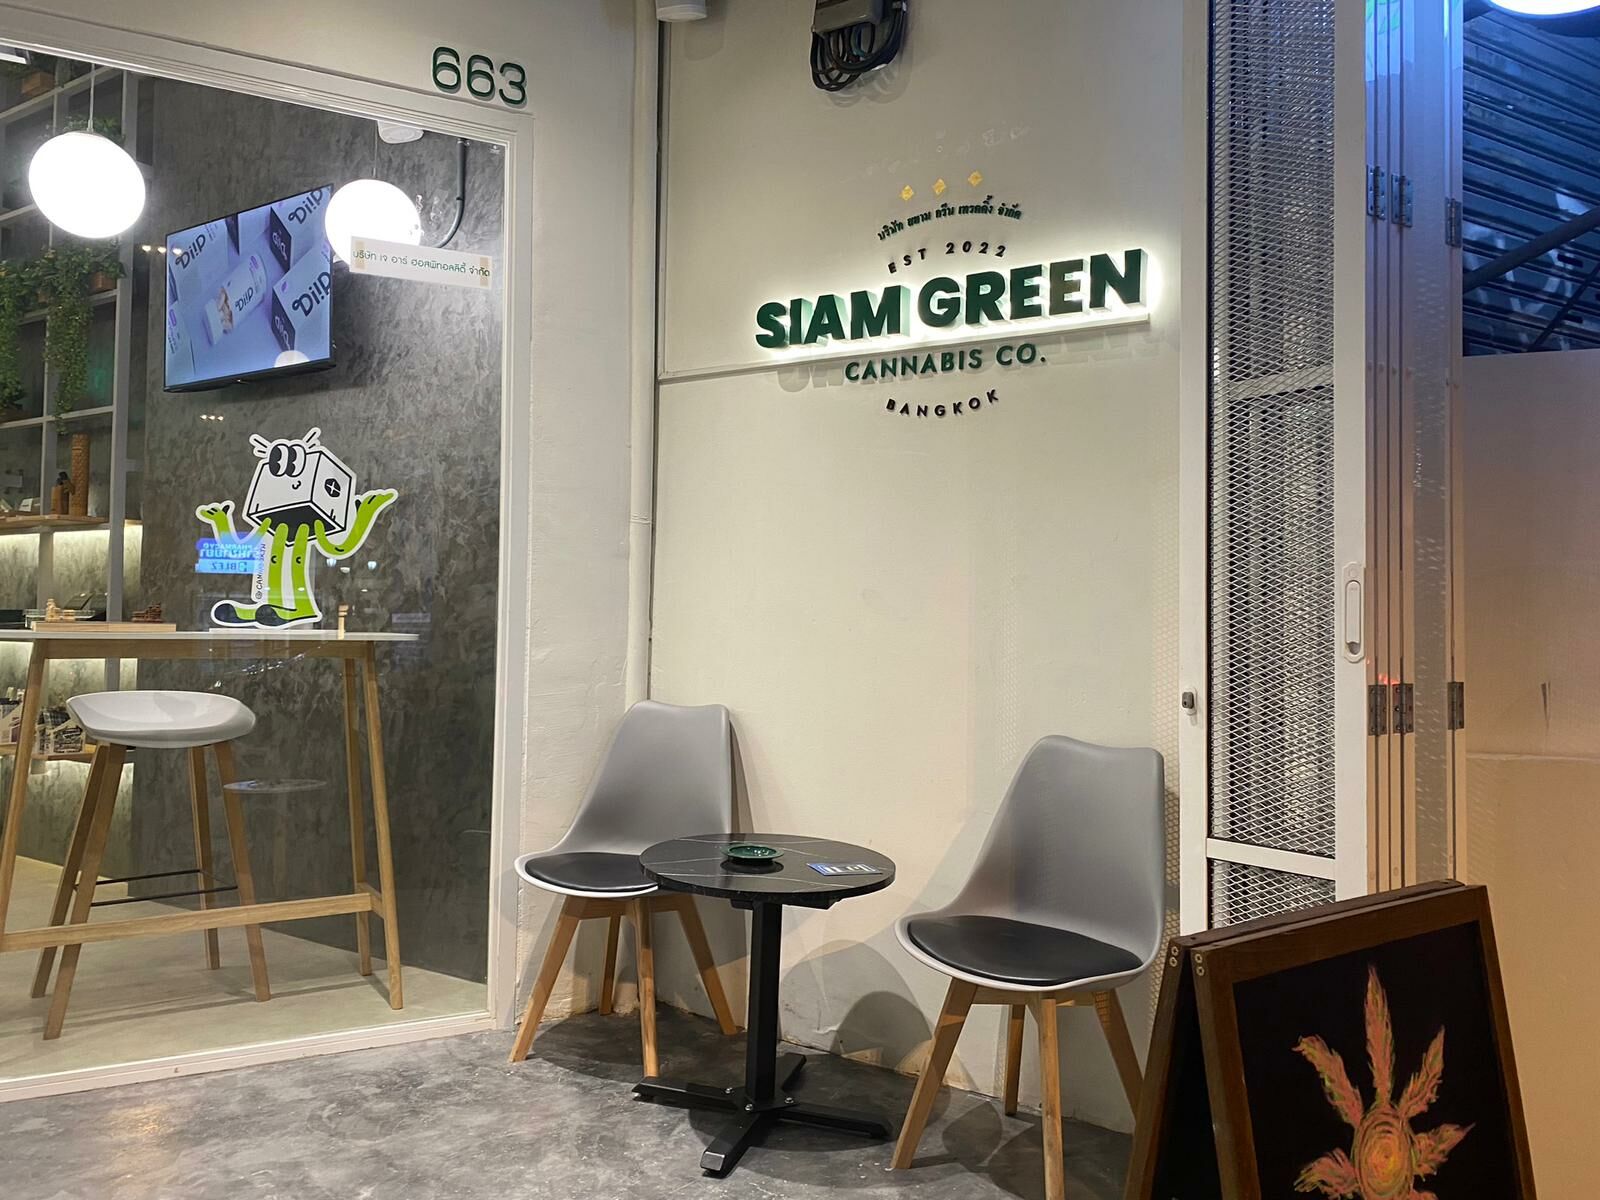 Siam Green Cannabis Co. کے ساتھ بہتر انتخاب کریں، بھنگ اور CBD - میڈیکل ماریجوانا پروگرام کنکشن کے لیے آپ کی جگہ